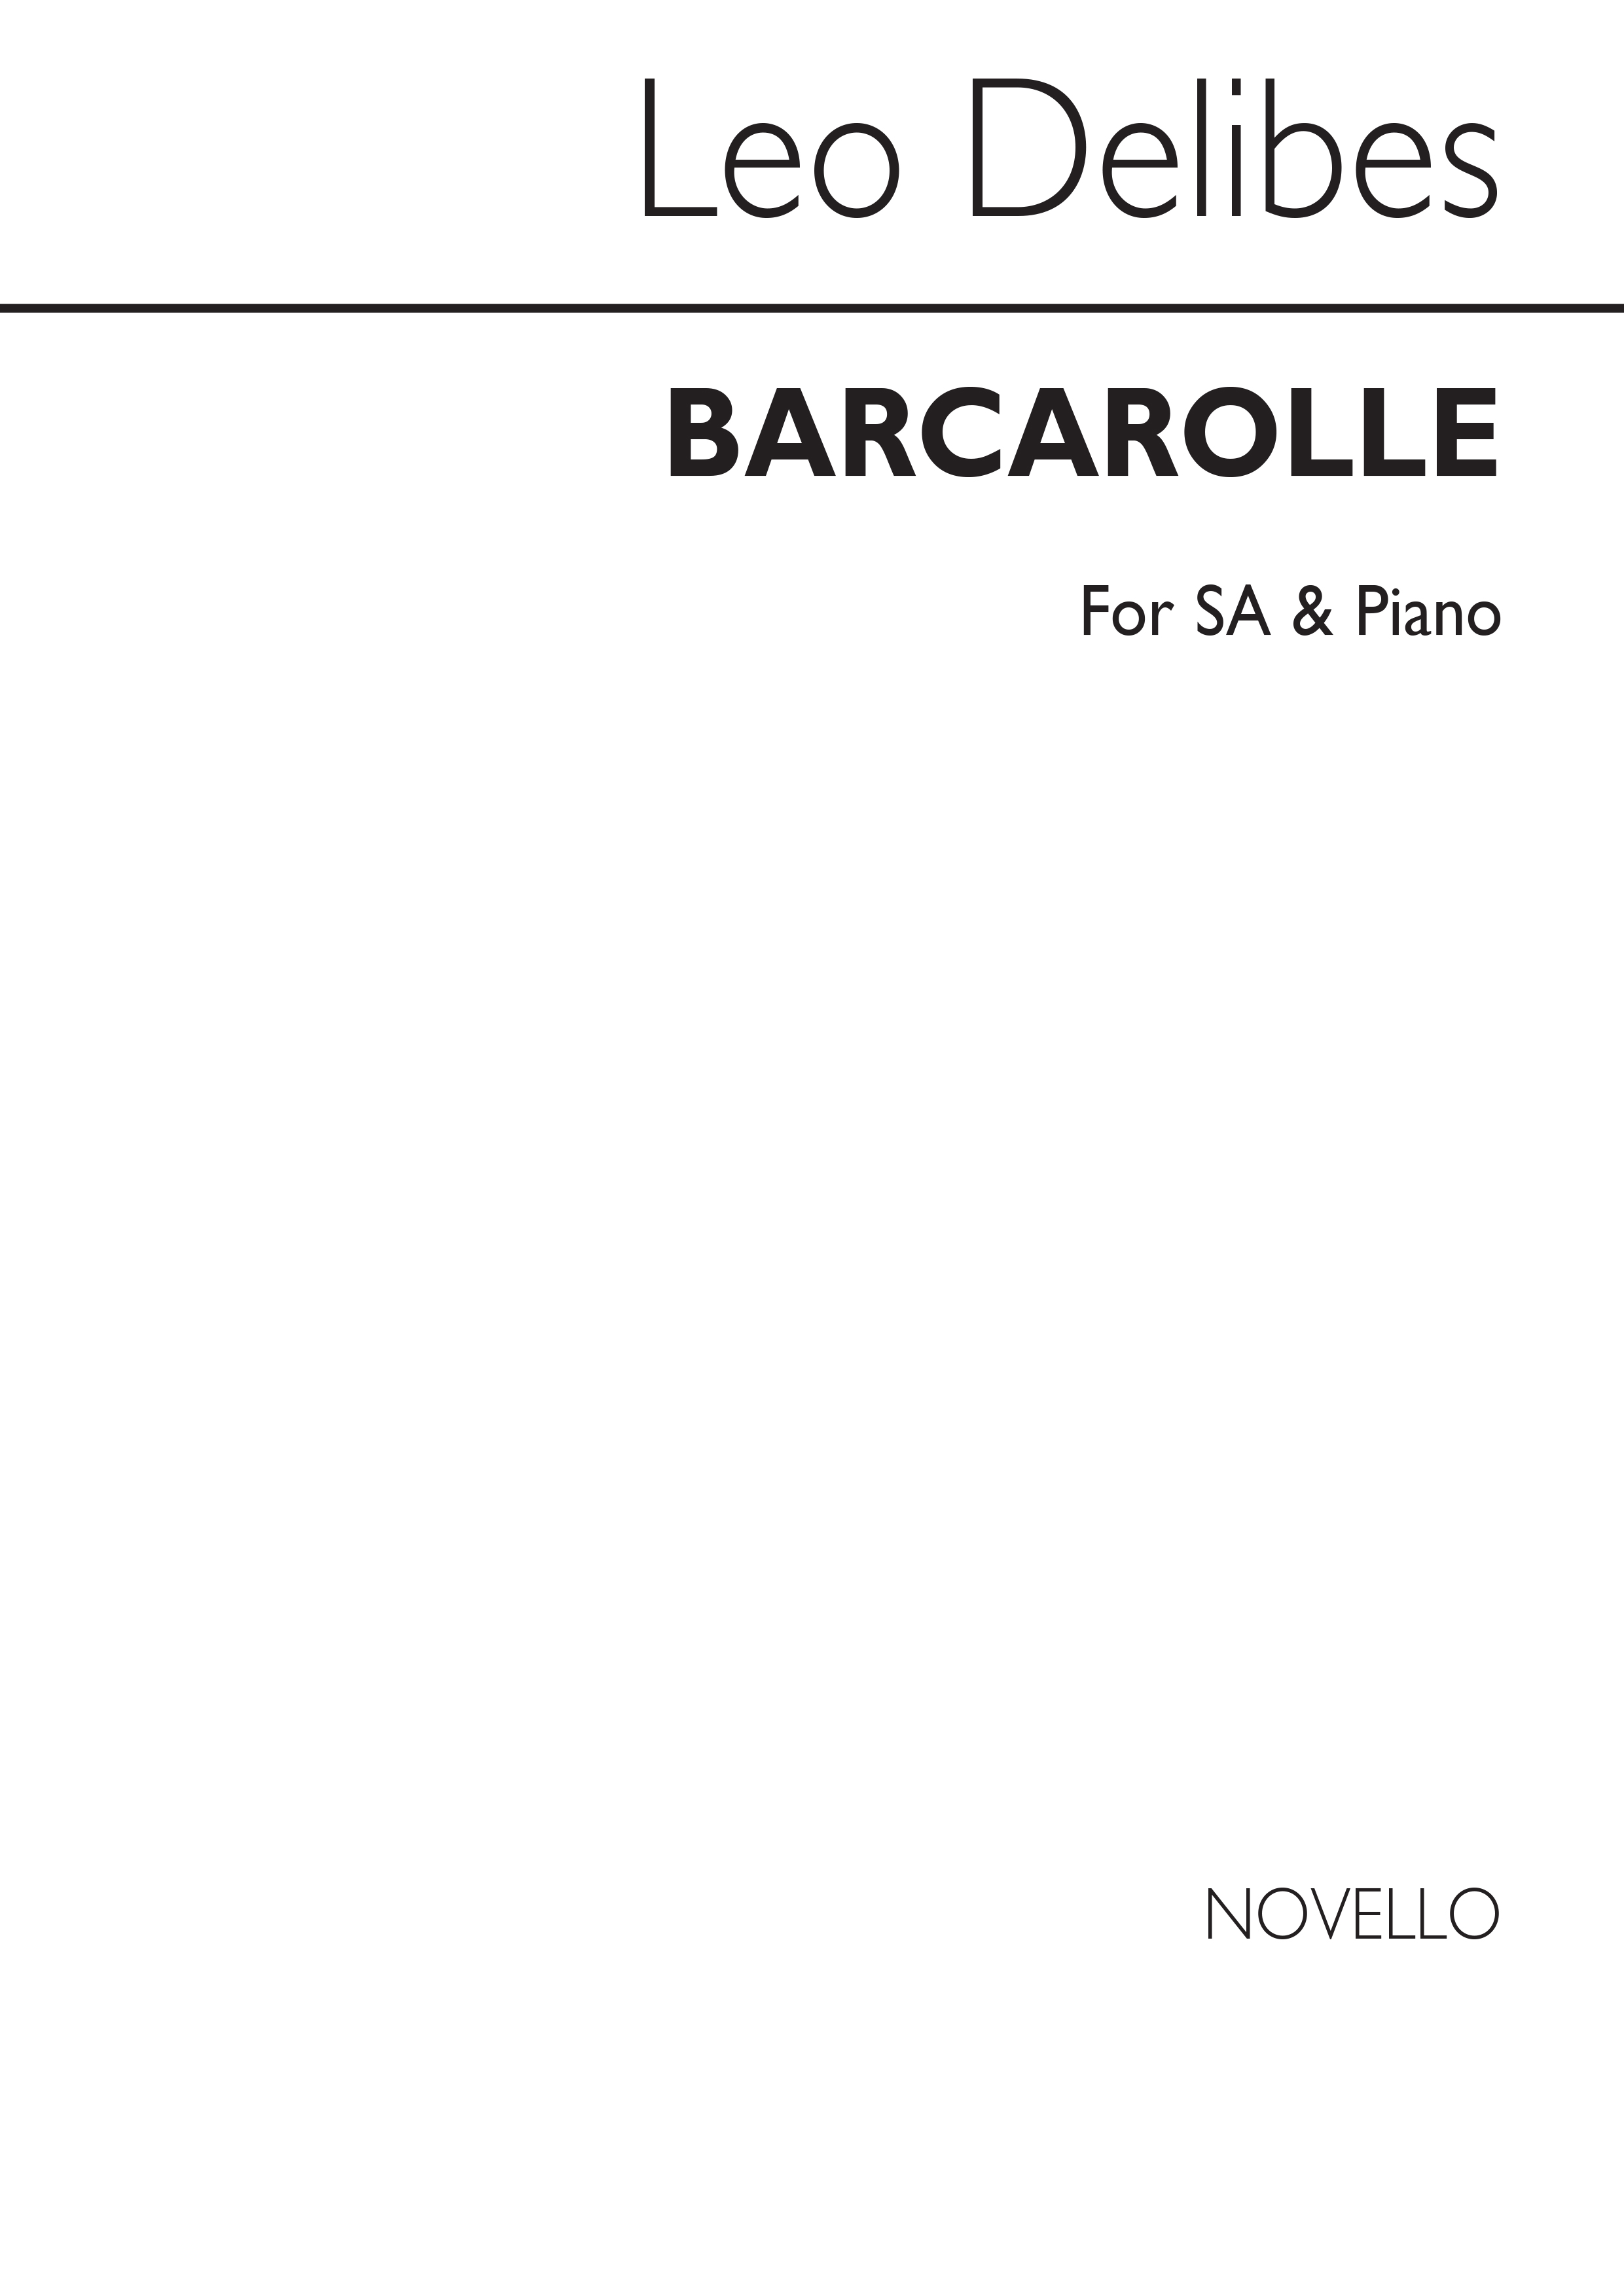 Léo Delibes: Delibes Barcarolle Soprano/Alto/ Piano: Upper Voices: Vocal Score